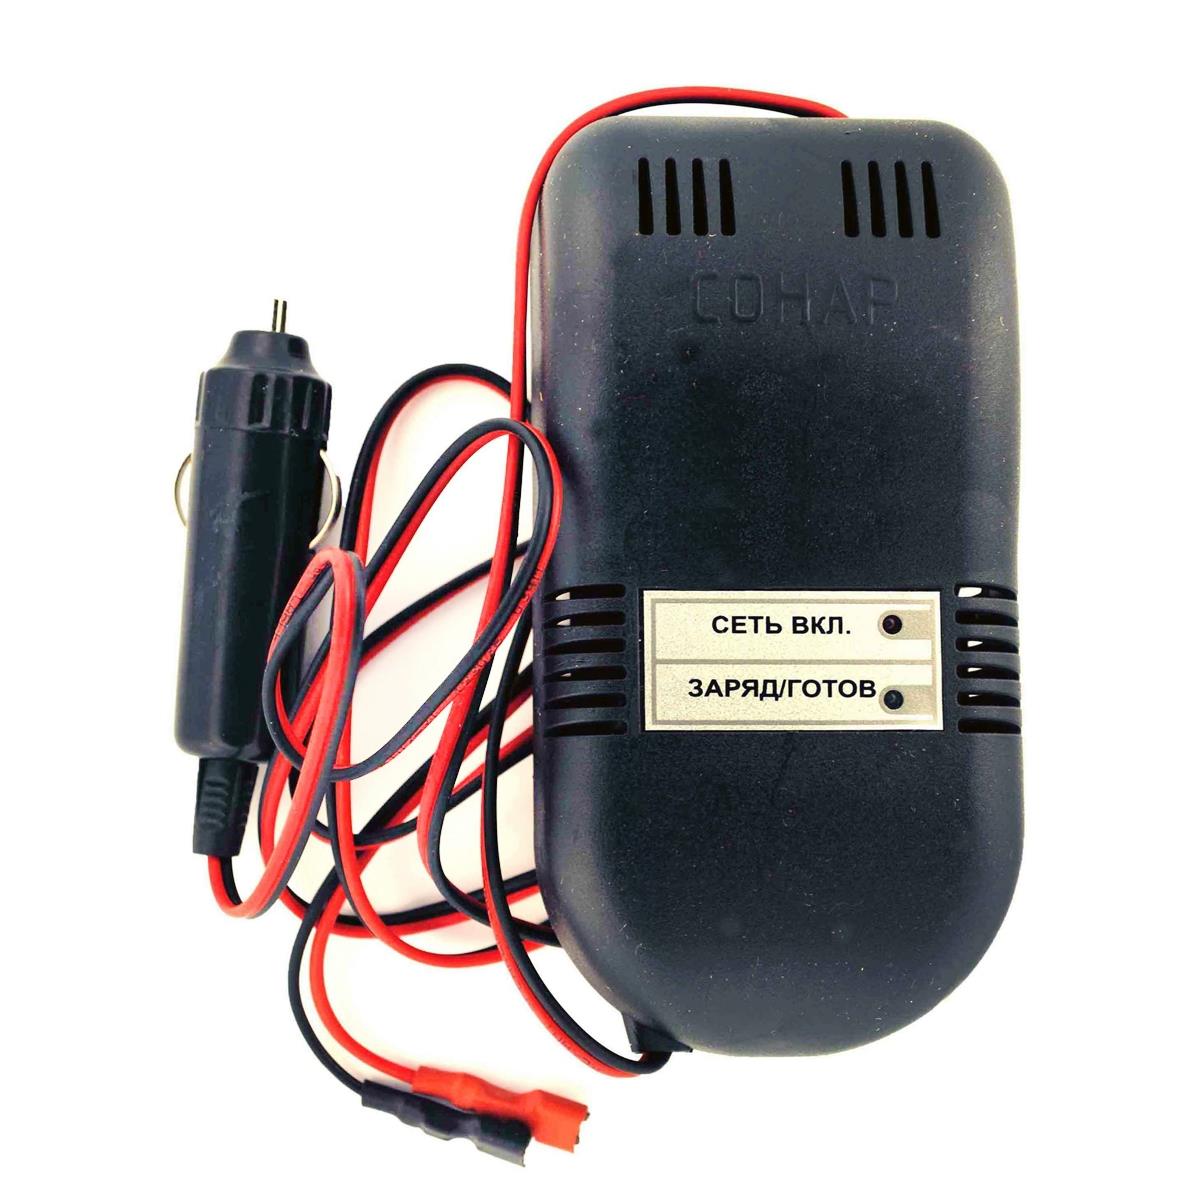 Зарядное устройство COHAP DC/DC 12 V (205.05) электронное зарядное устройство для свинцово кислотных аккумуляторов goodyear